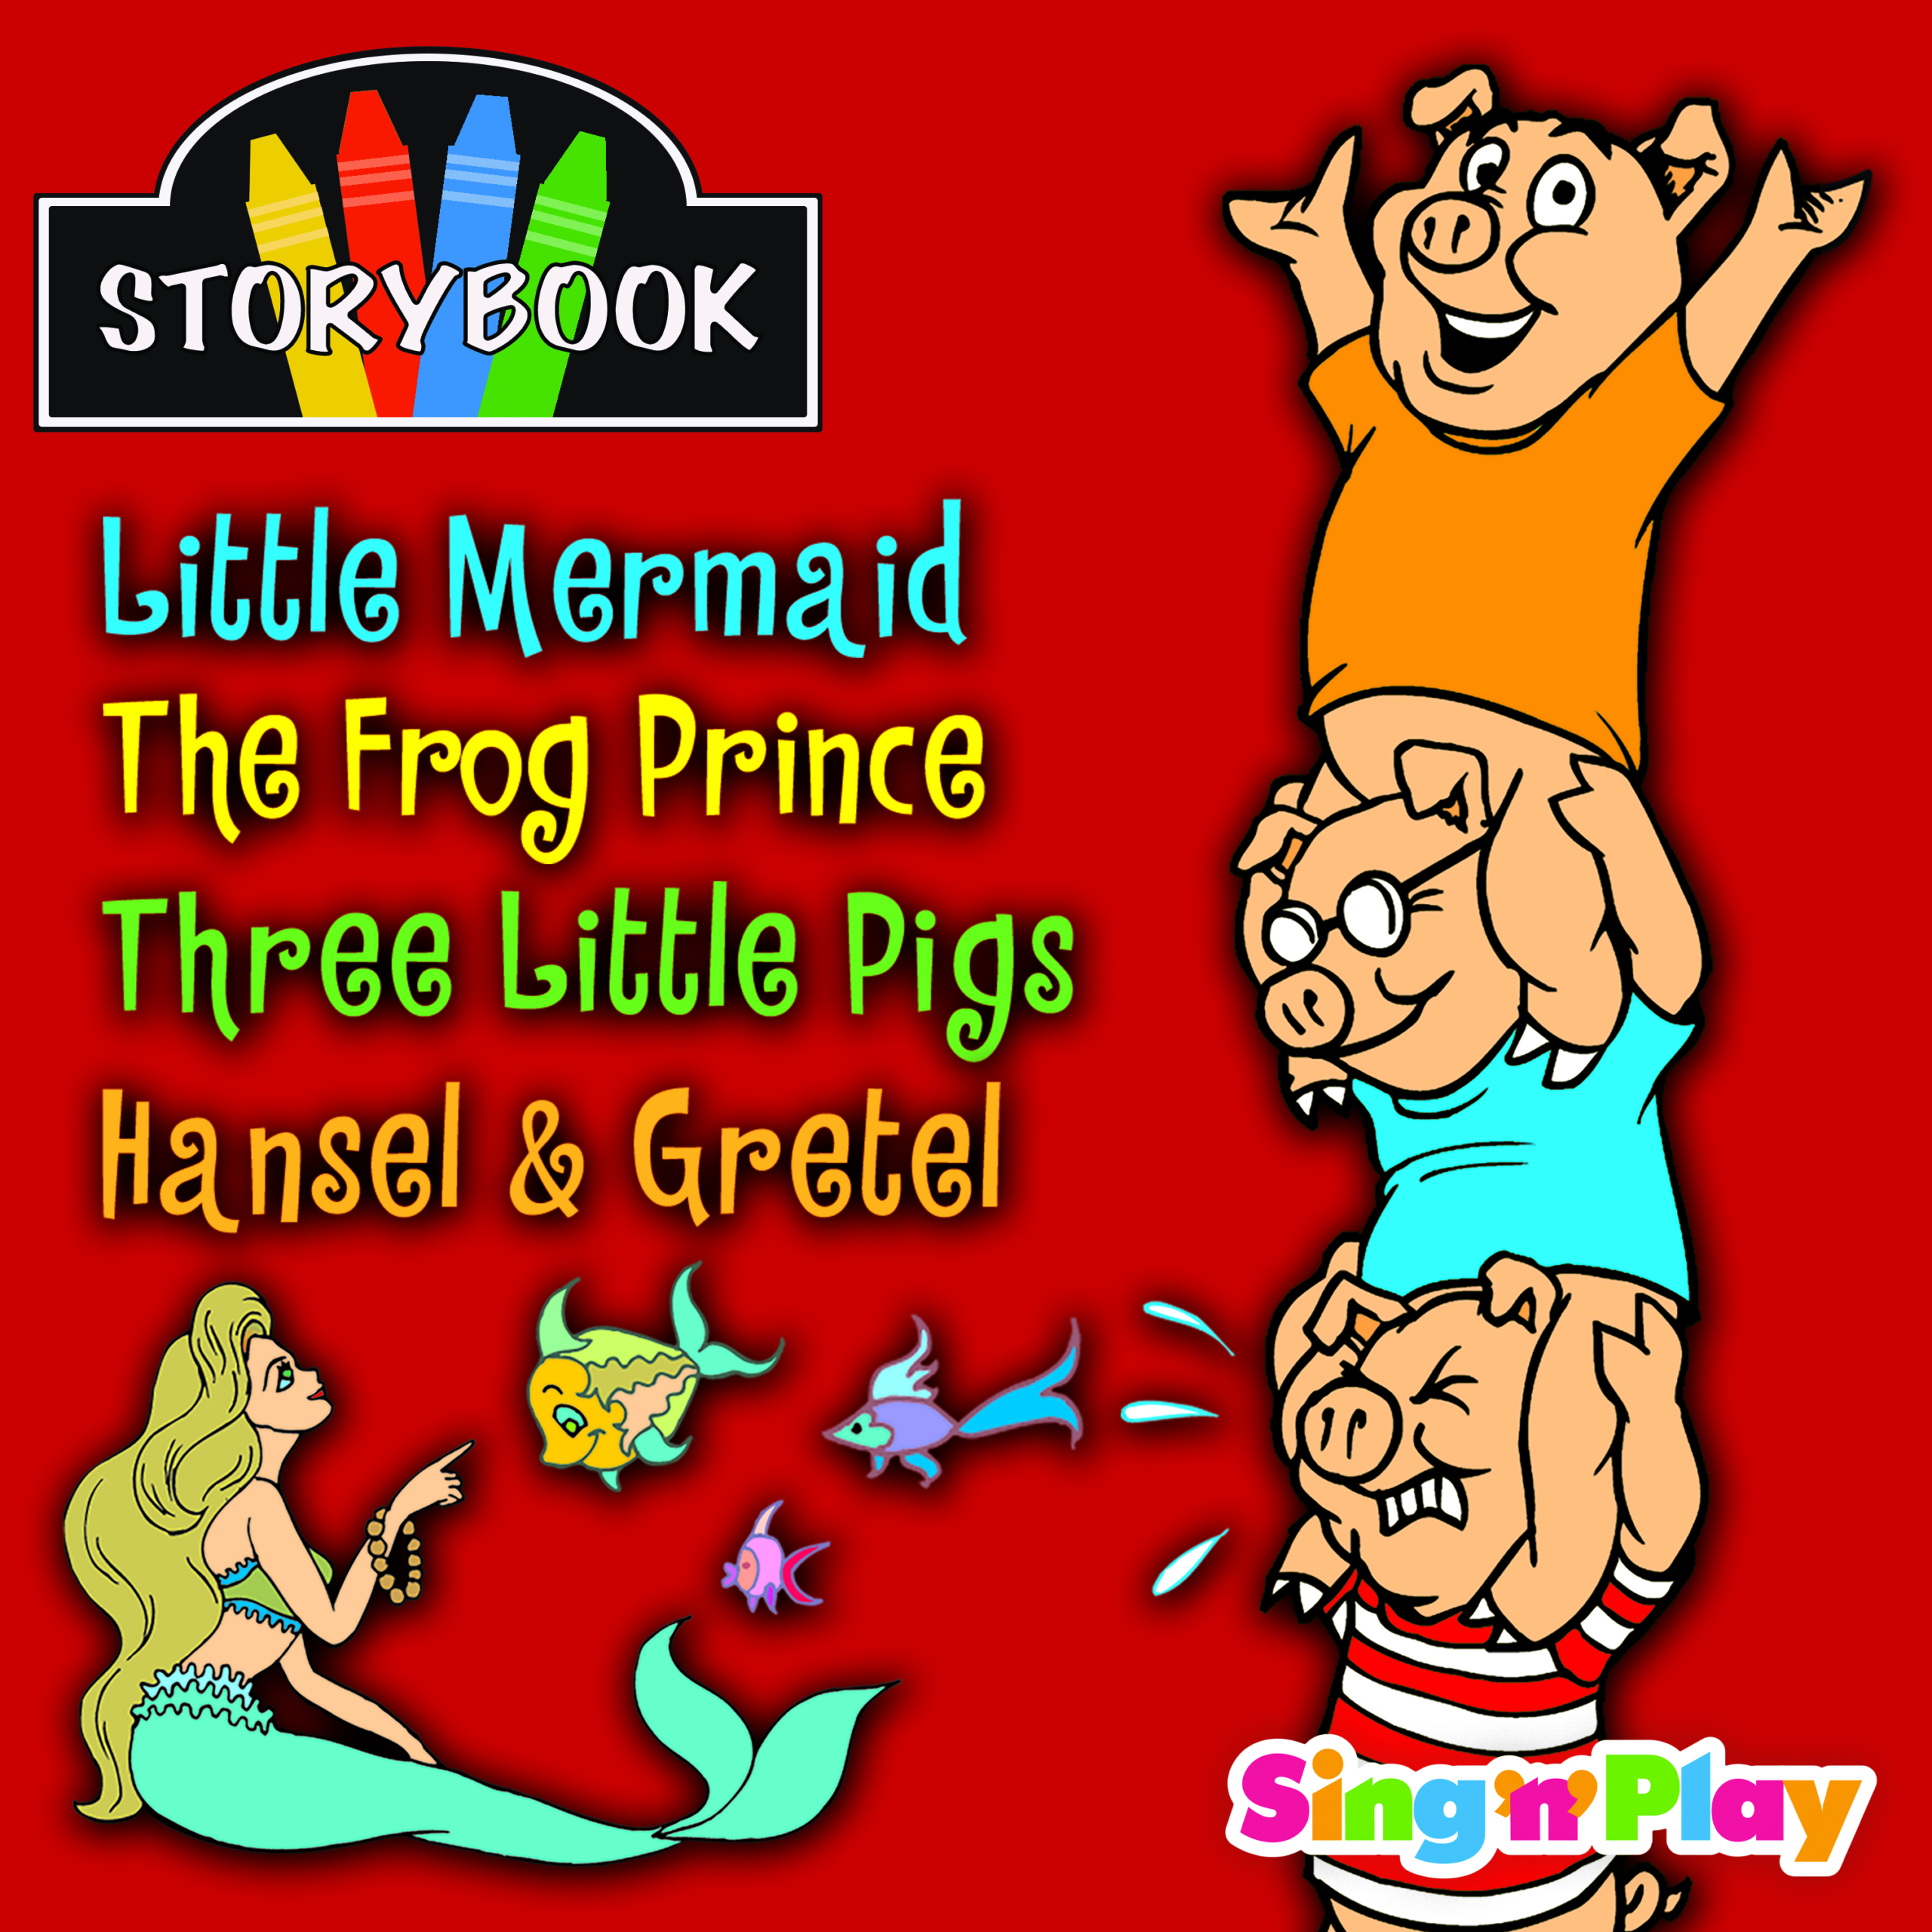 Storybook Storytellers: Little Mermaid, The Frog Prince, Three Little Pigs, Hansel & Gretel